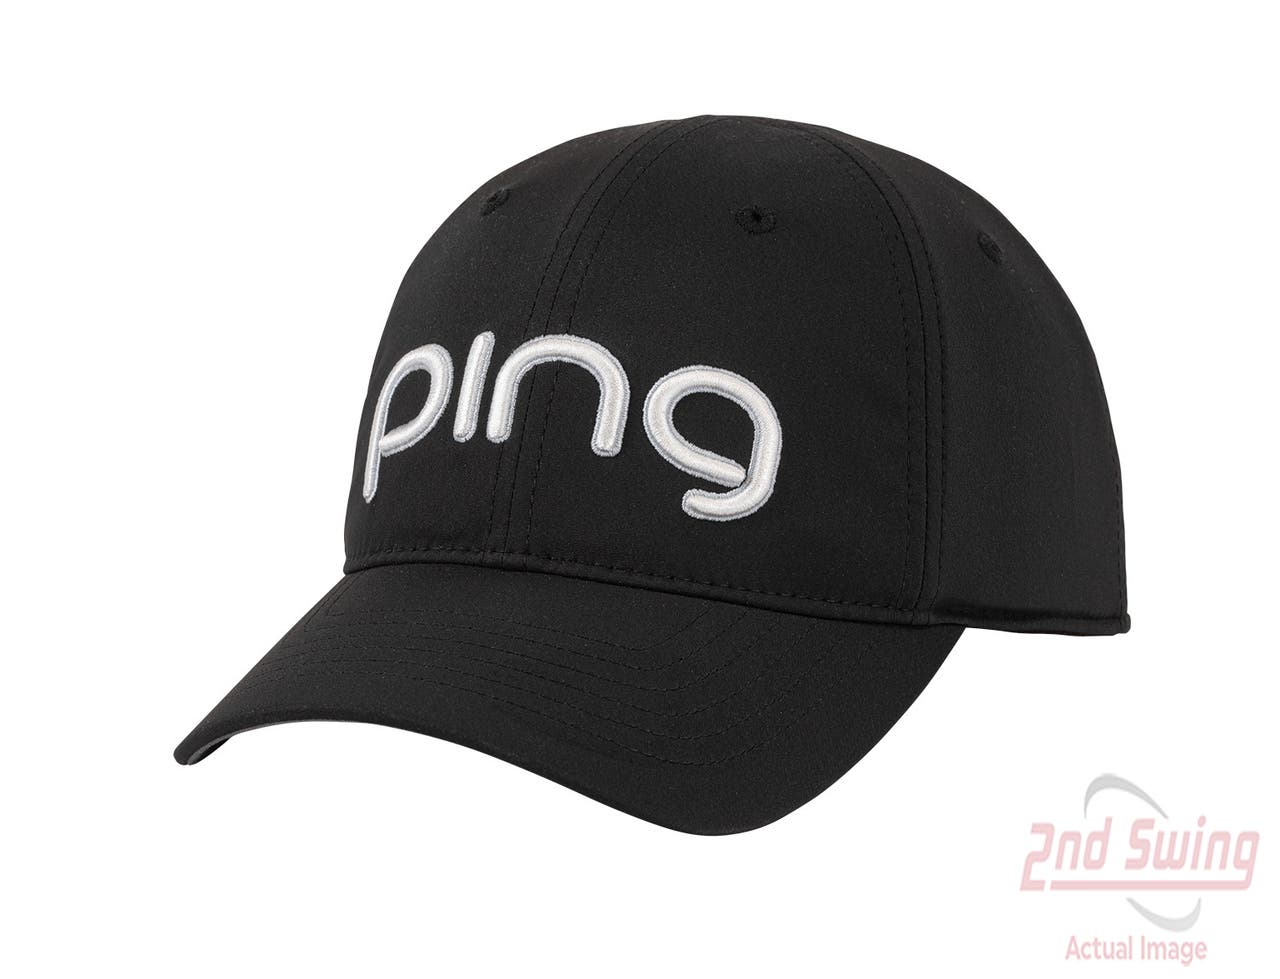 Ping 2022 Tour Ladies Delta Cap Golf Hat